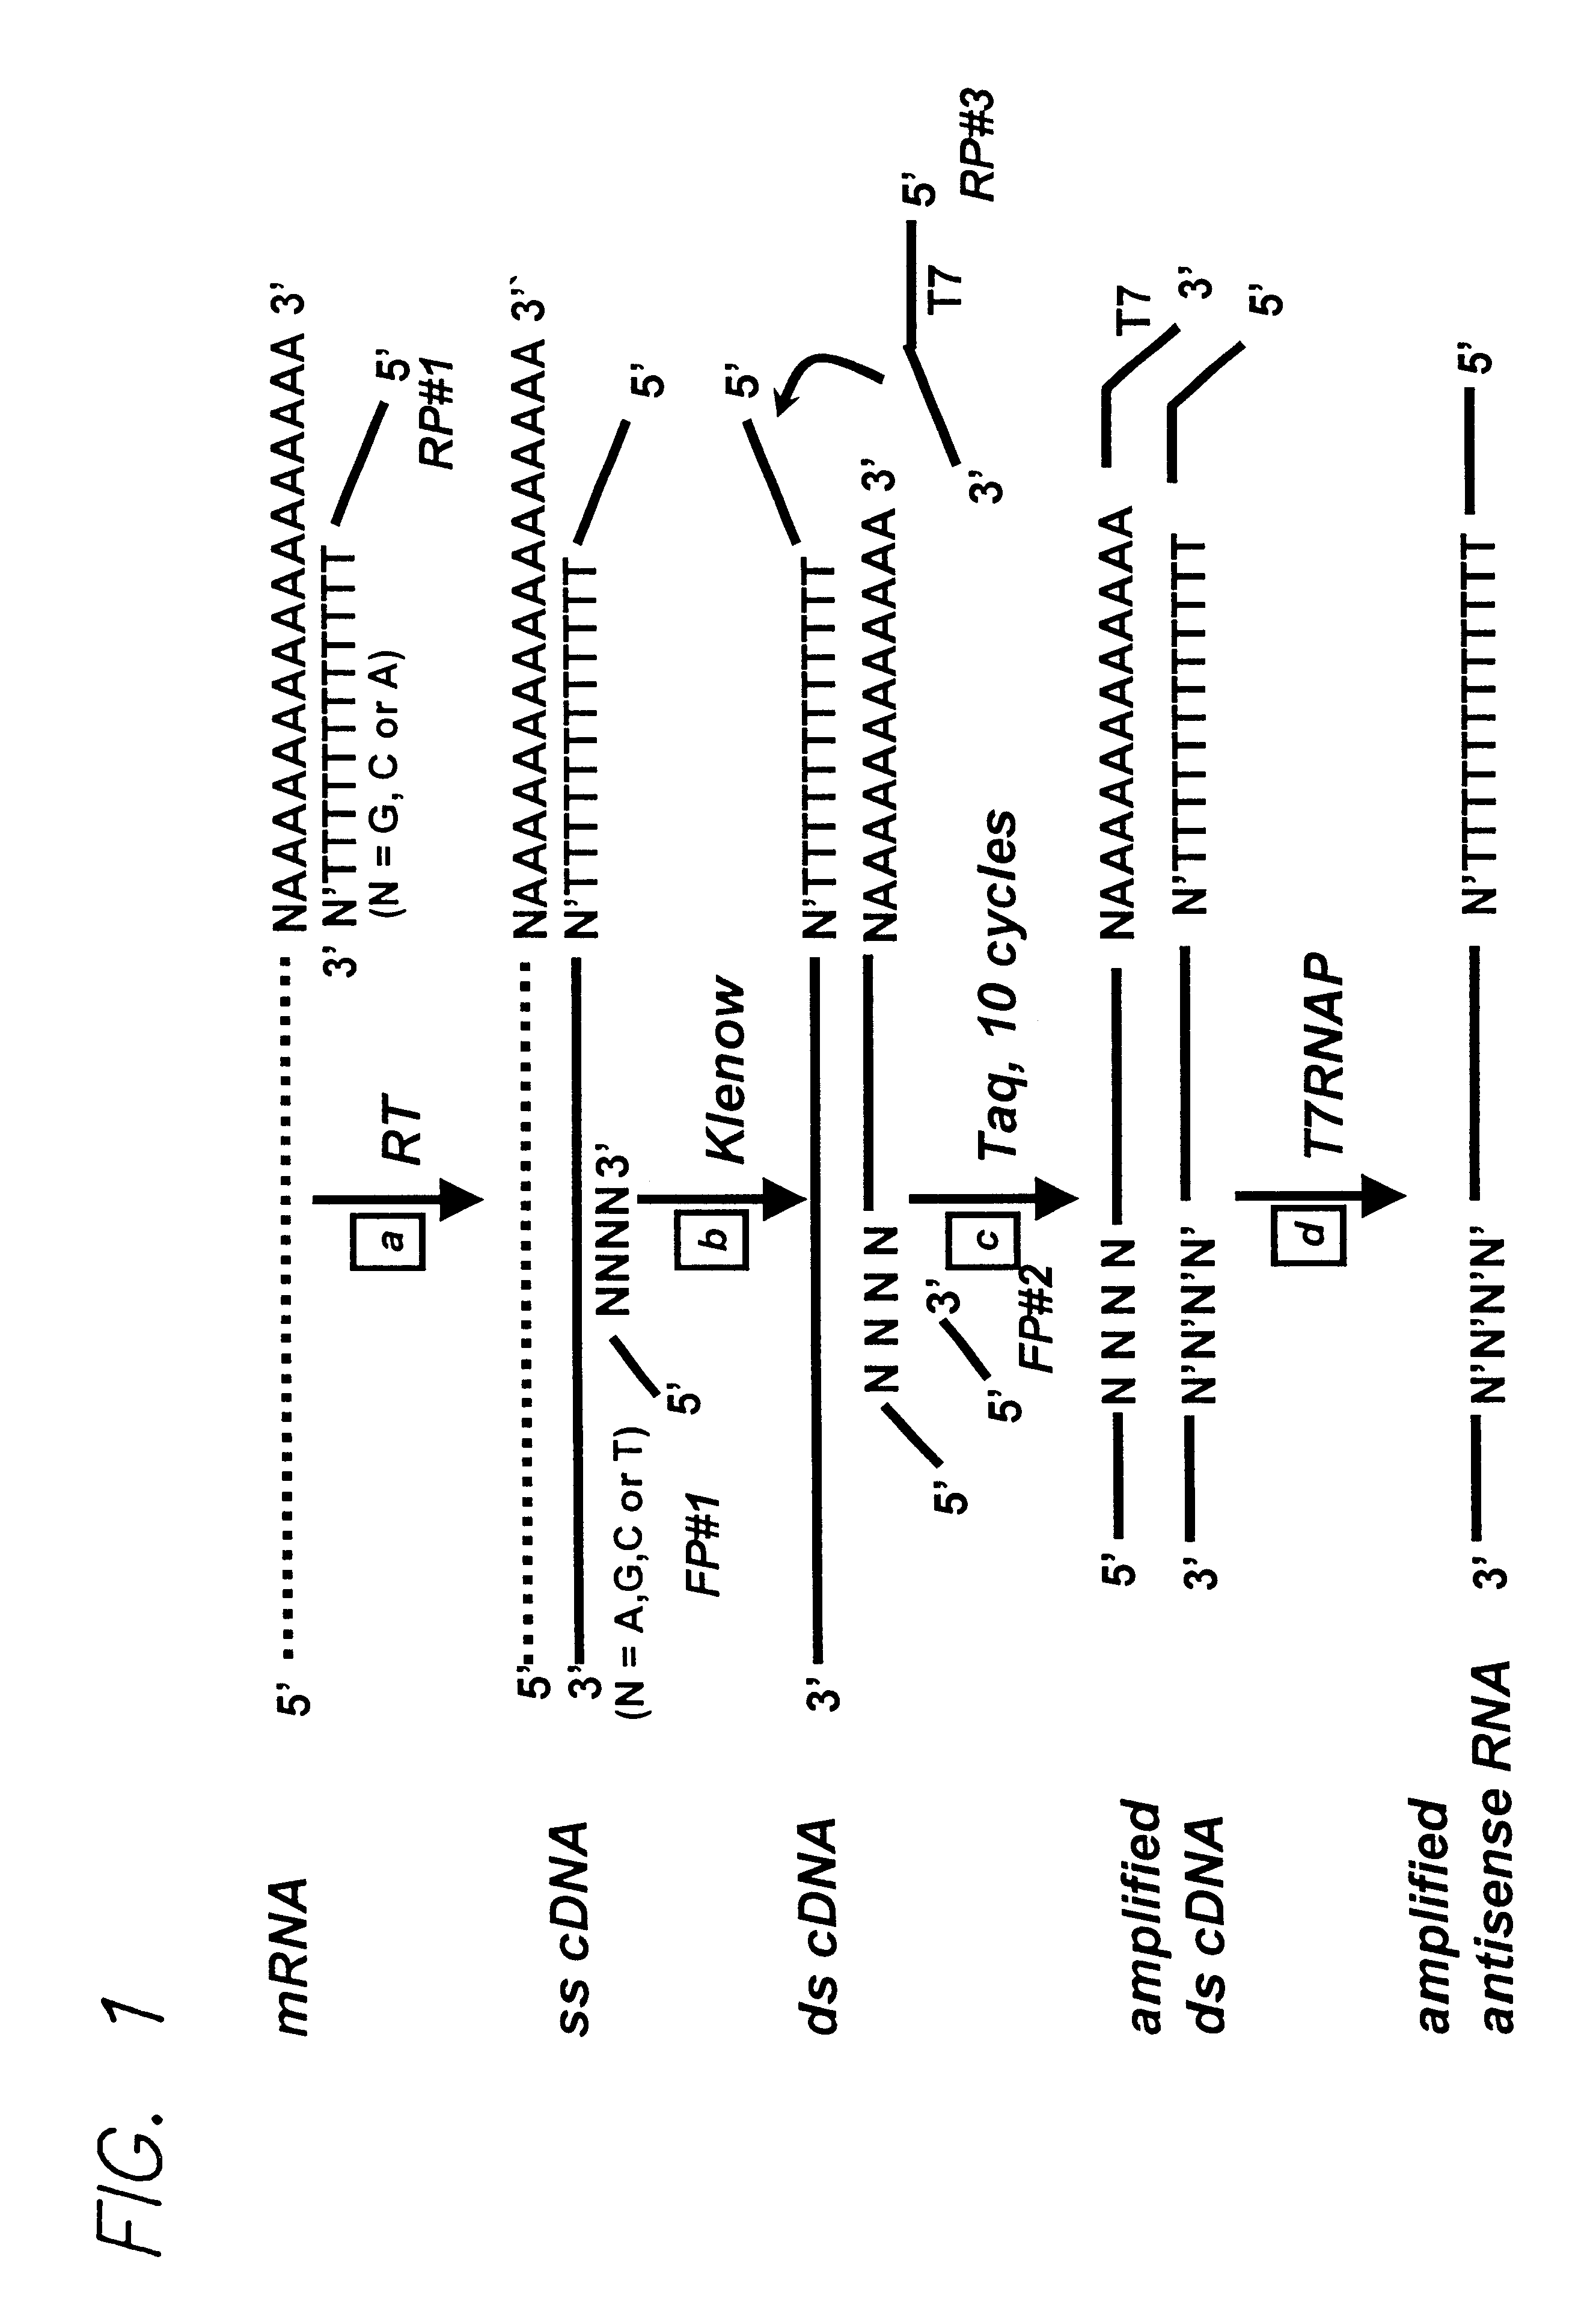 RNA amplification method